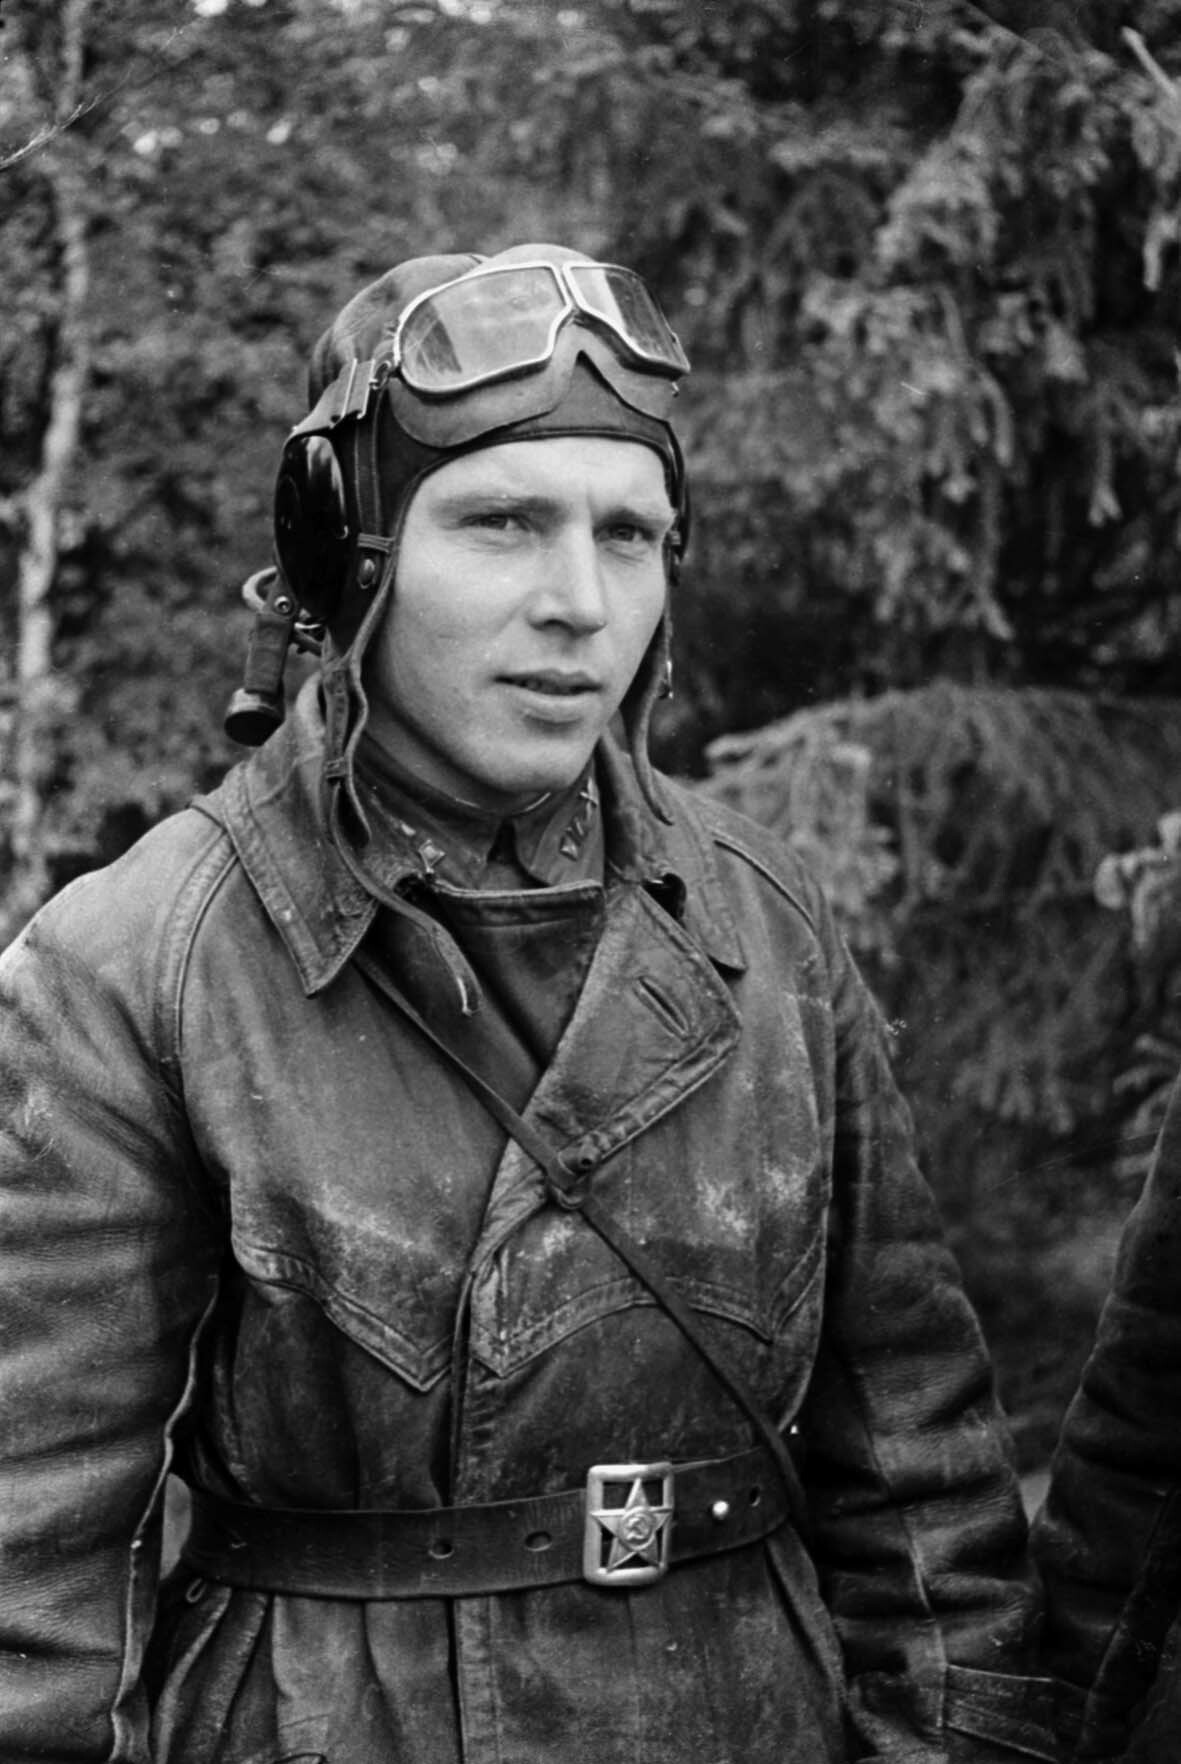 Fotografie: Pilot des 6. Gardeschlachtfliegerregiments, Kalininer Front, 16. Juni 1942 (Museum Berlin-Karlshorst RR-P)